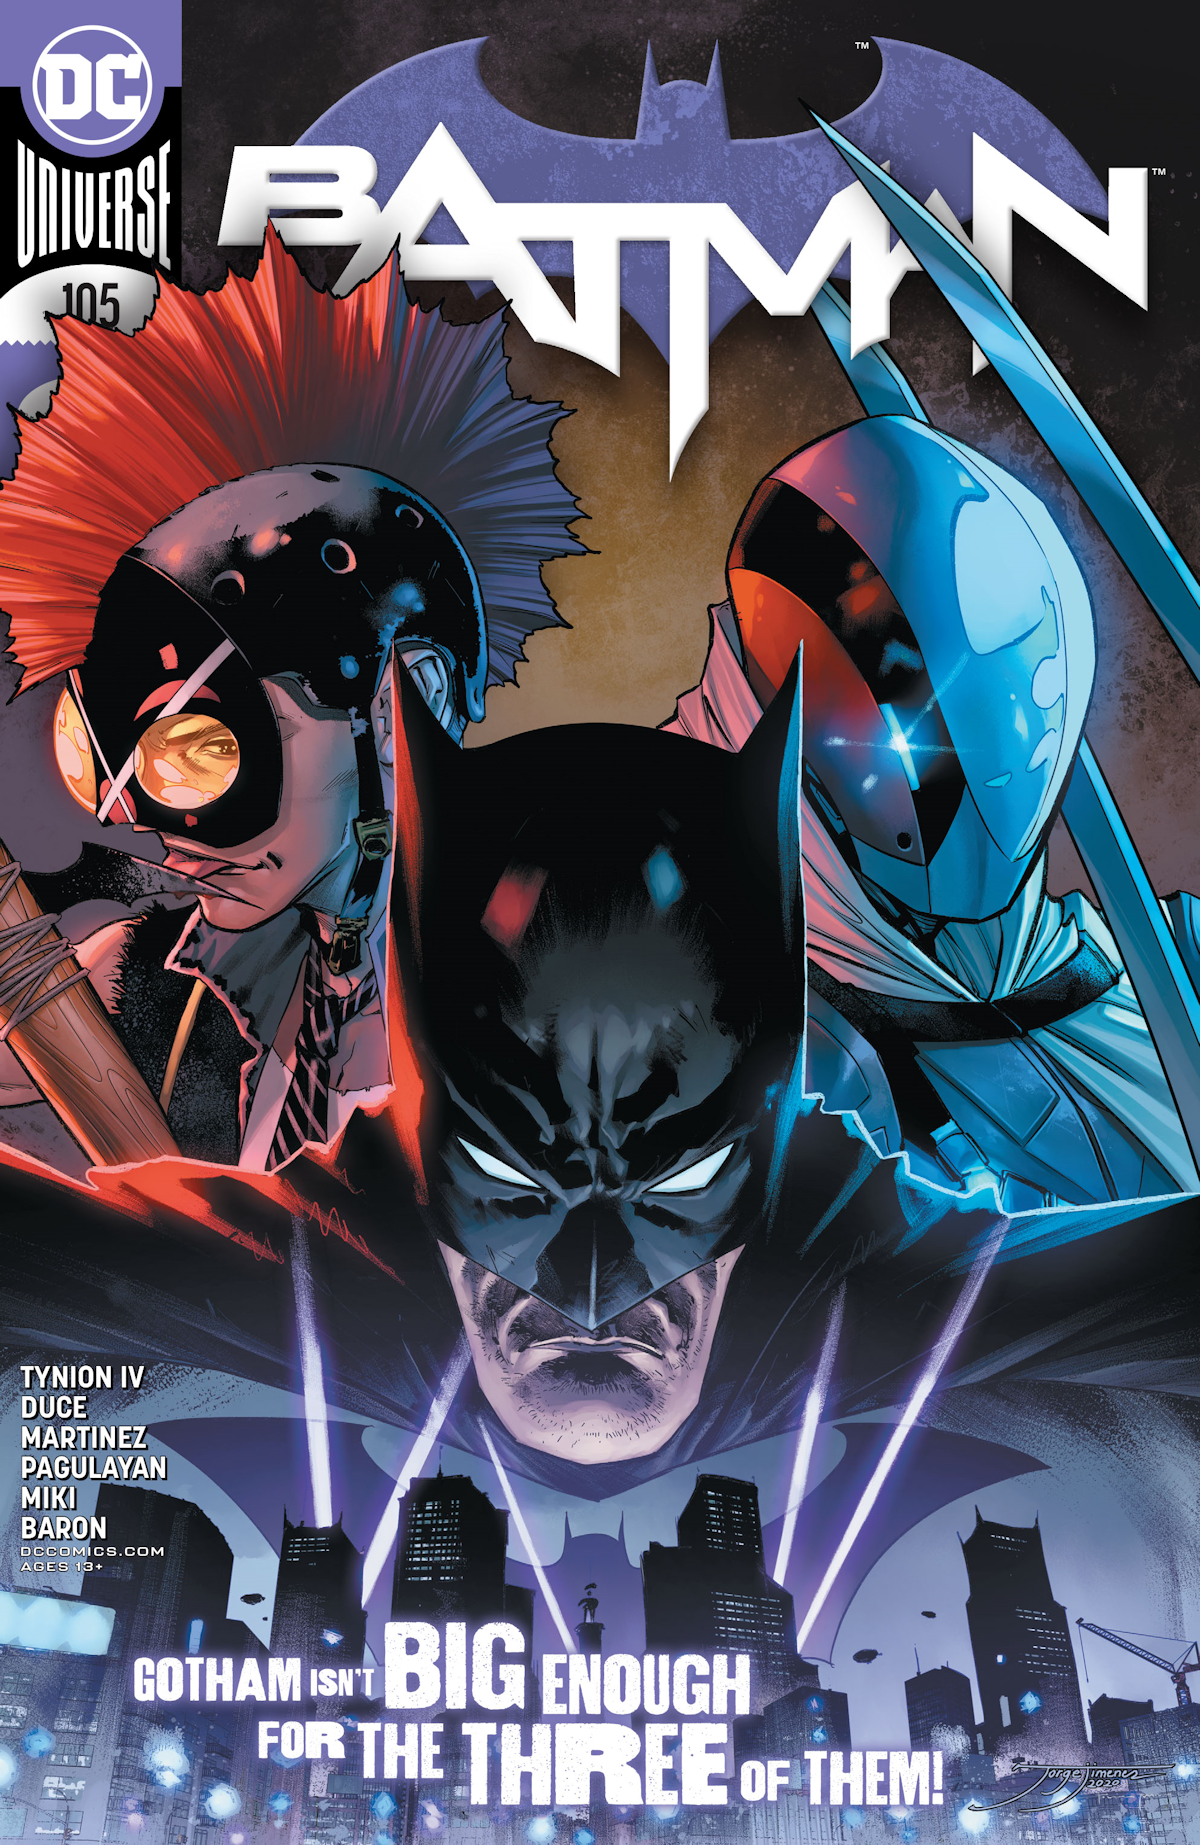 Batman Vol. 3 105 (Cover A)